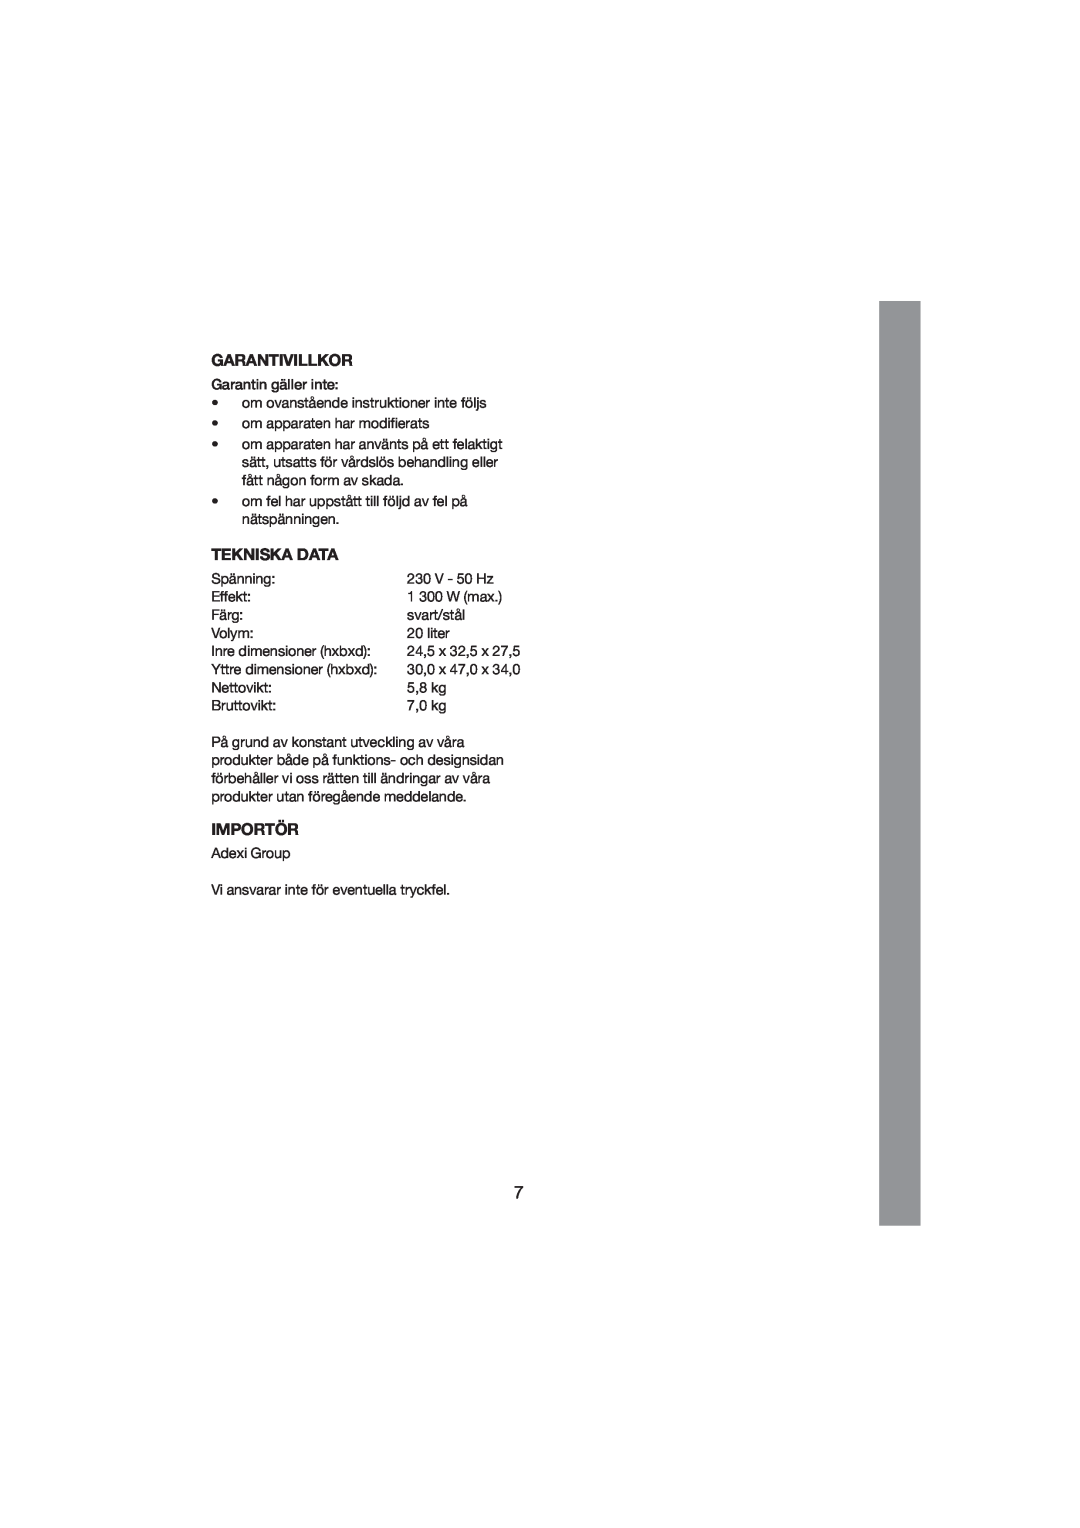 Melissa 251-003/004 manual Garantivillkor, Tekniska Data, Importör 